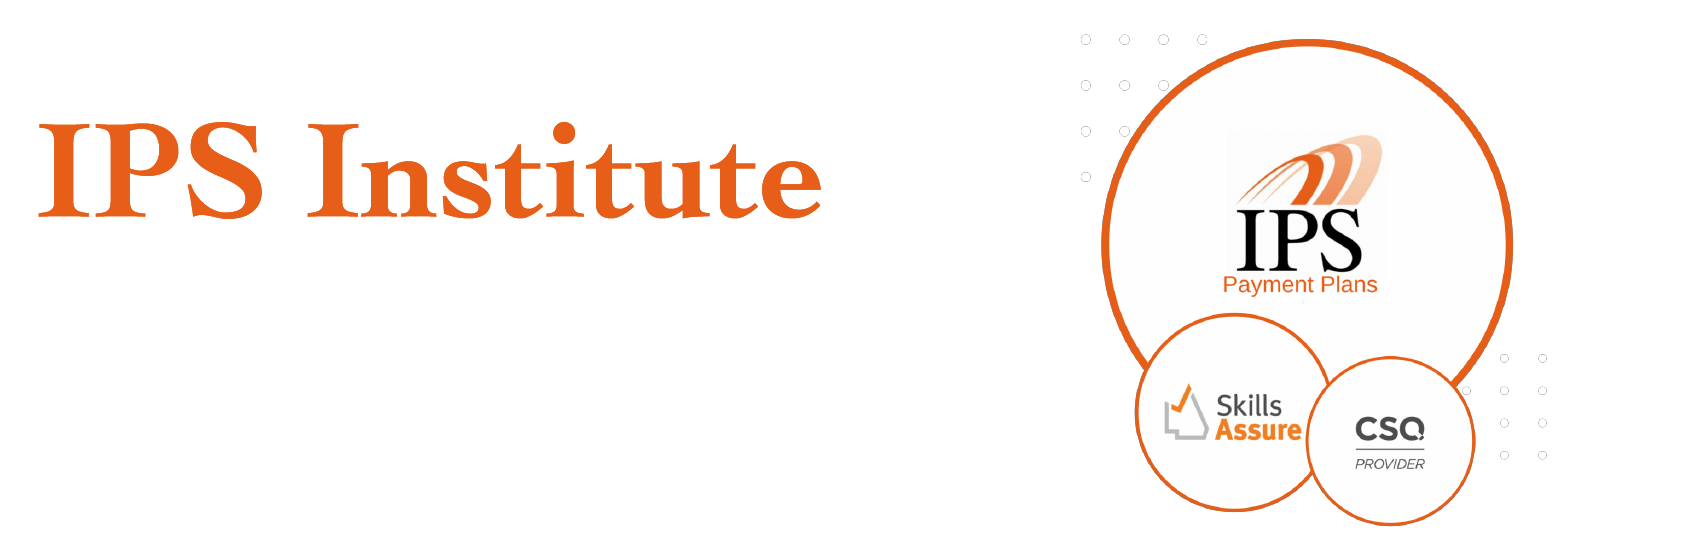 IPS Institute Funding Options